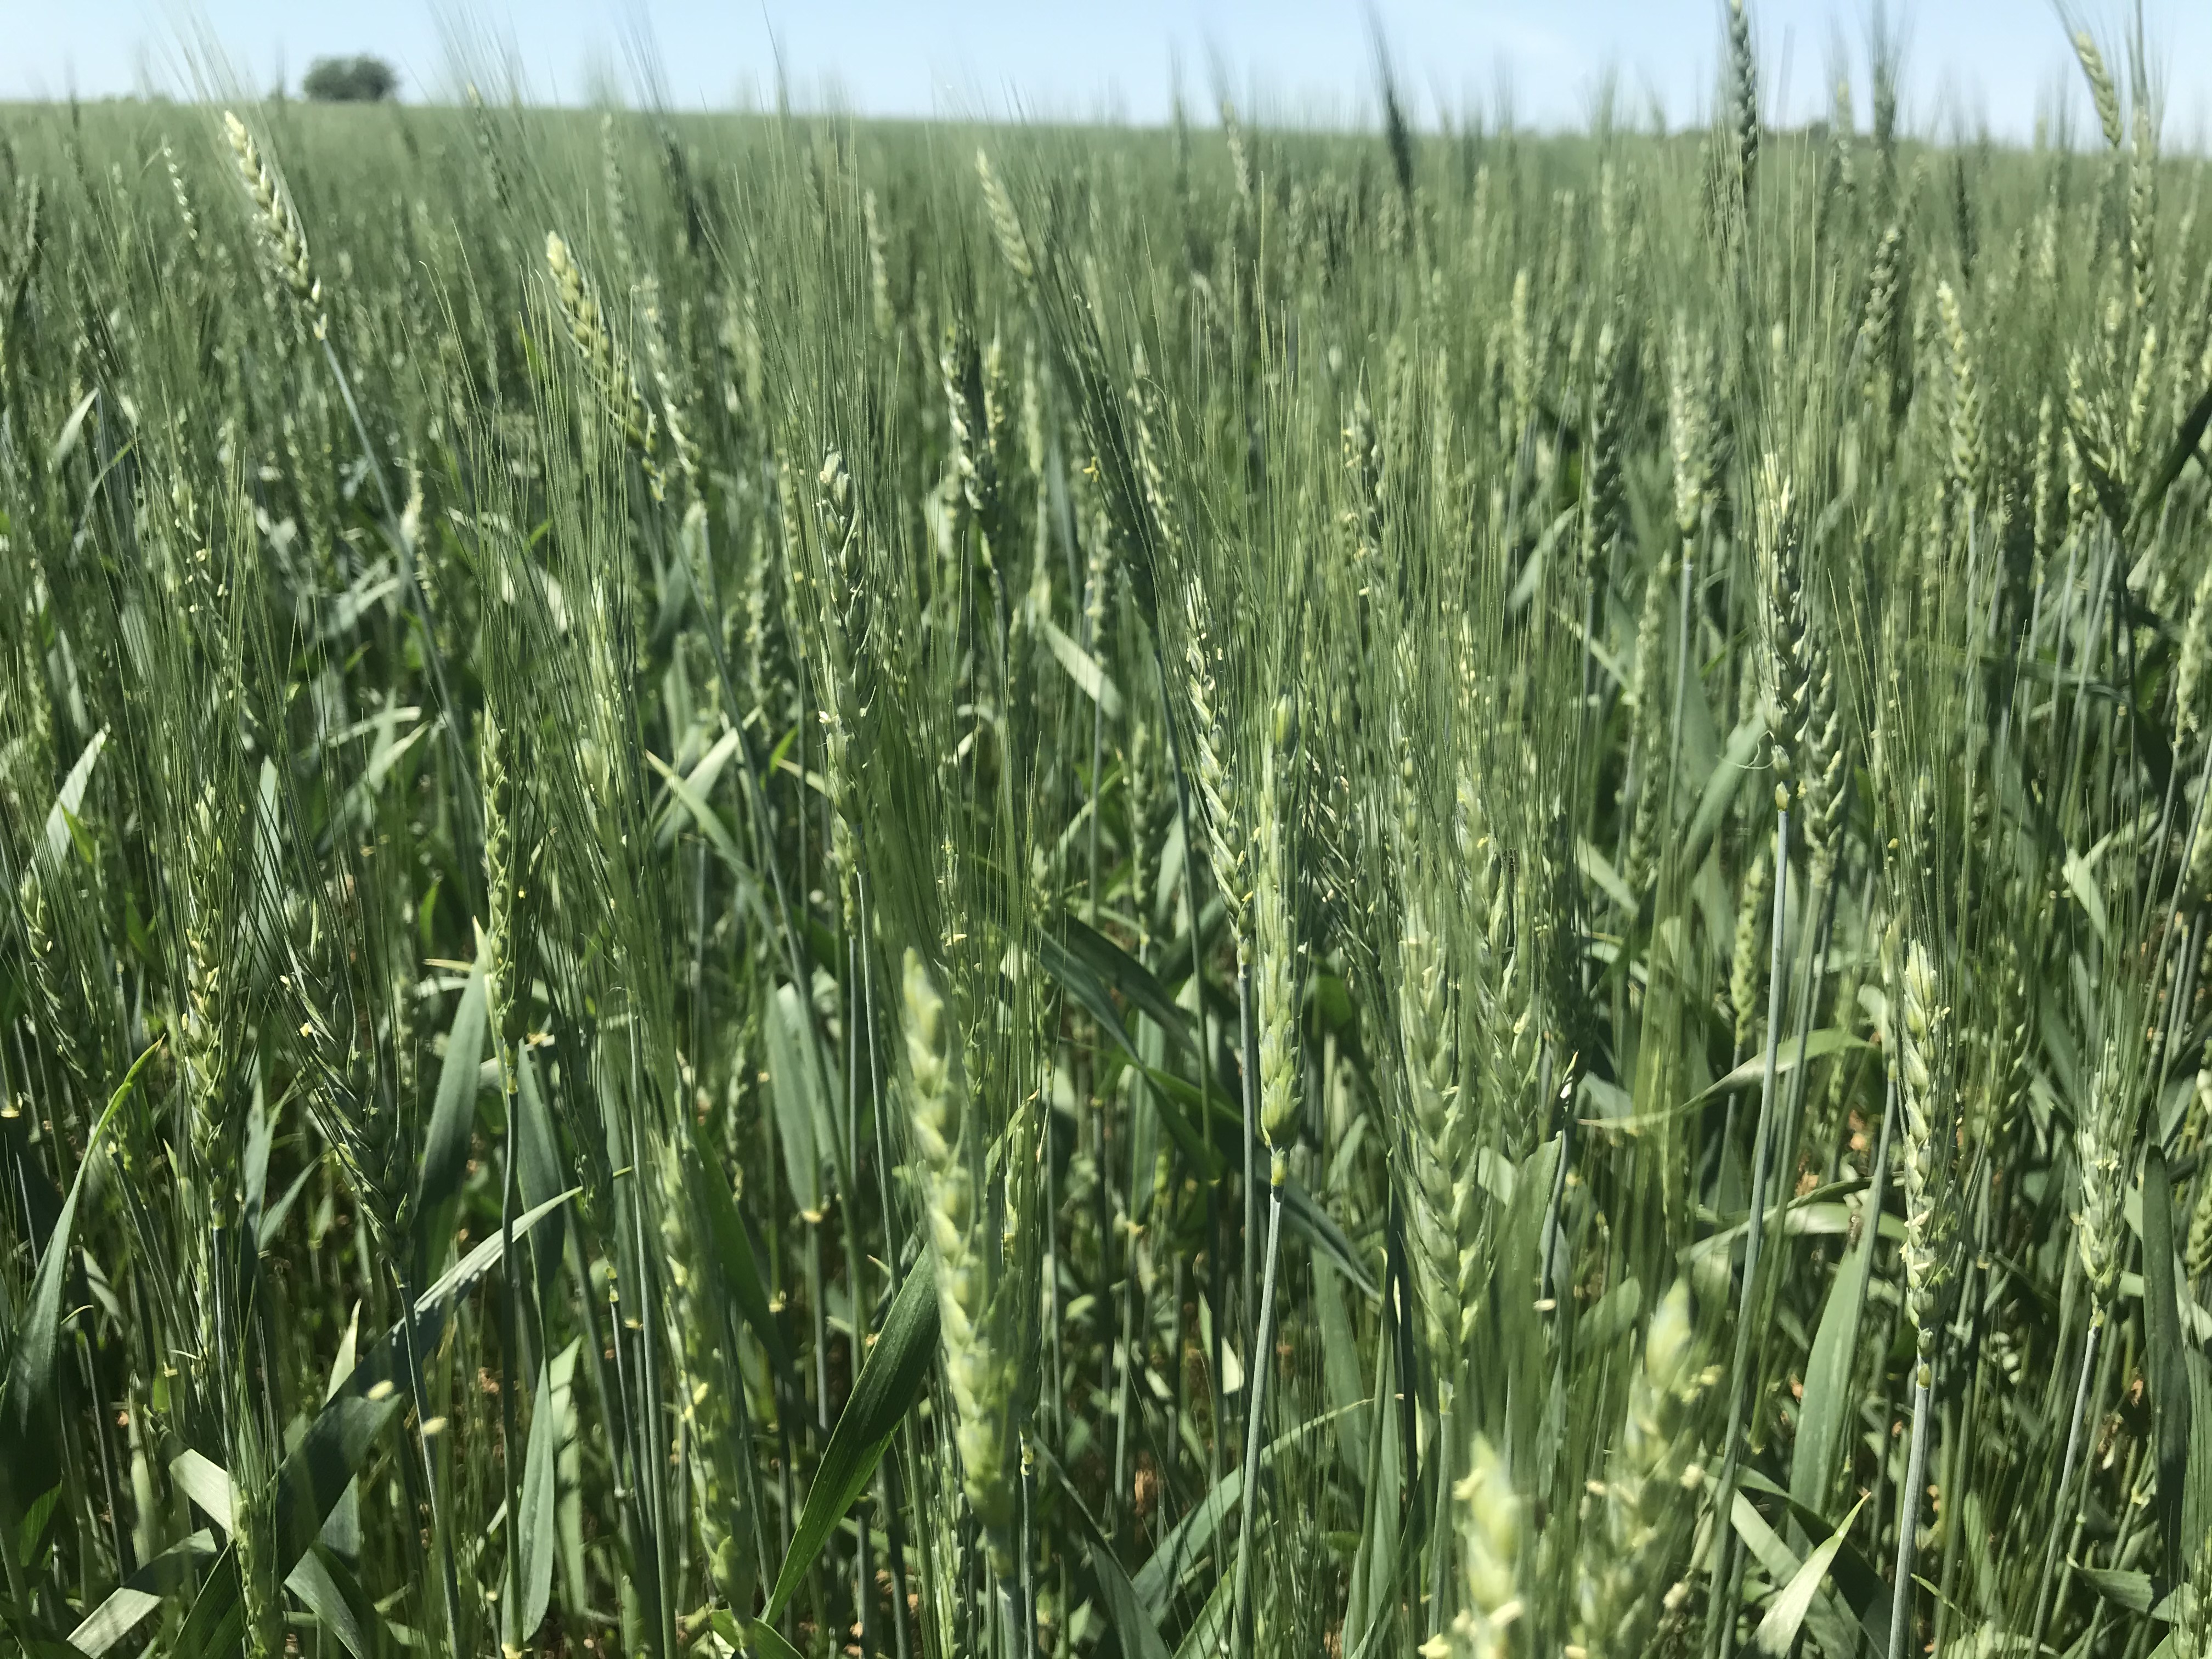 Green winter wheat field